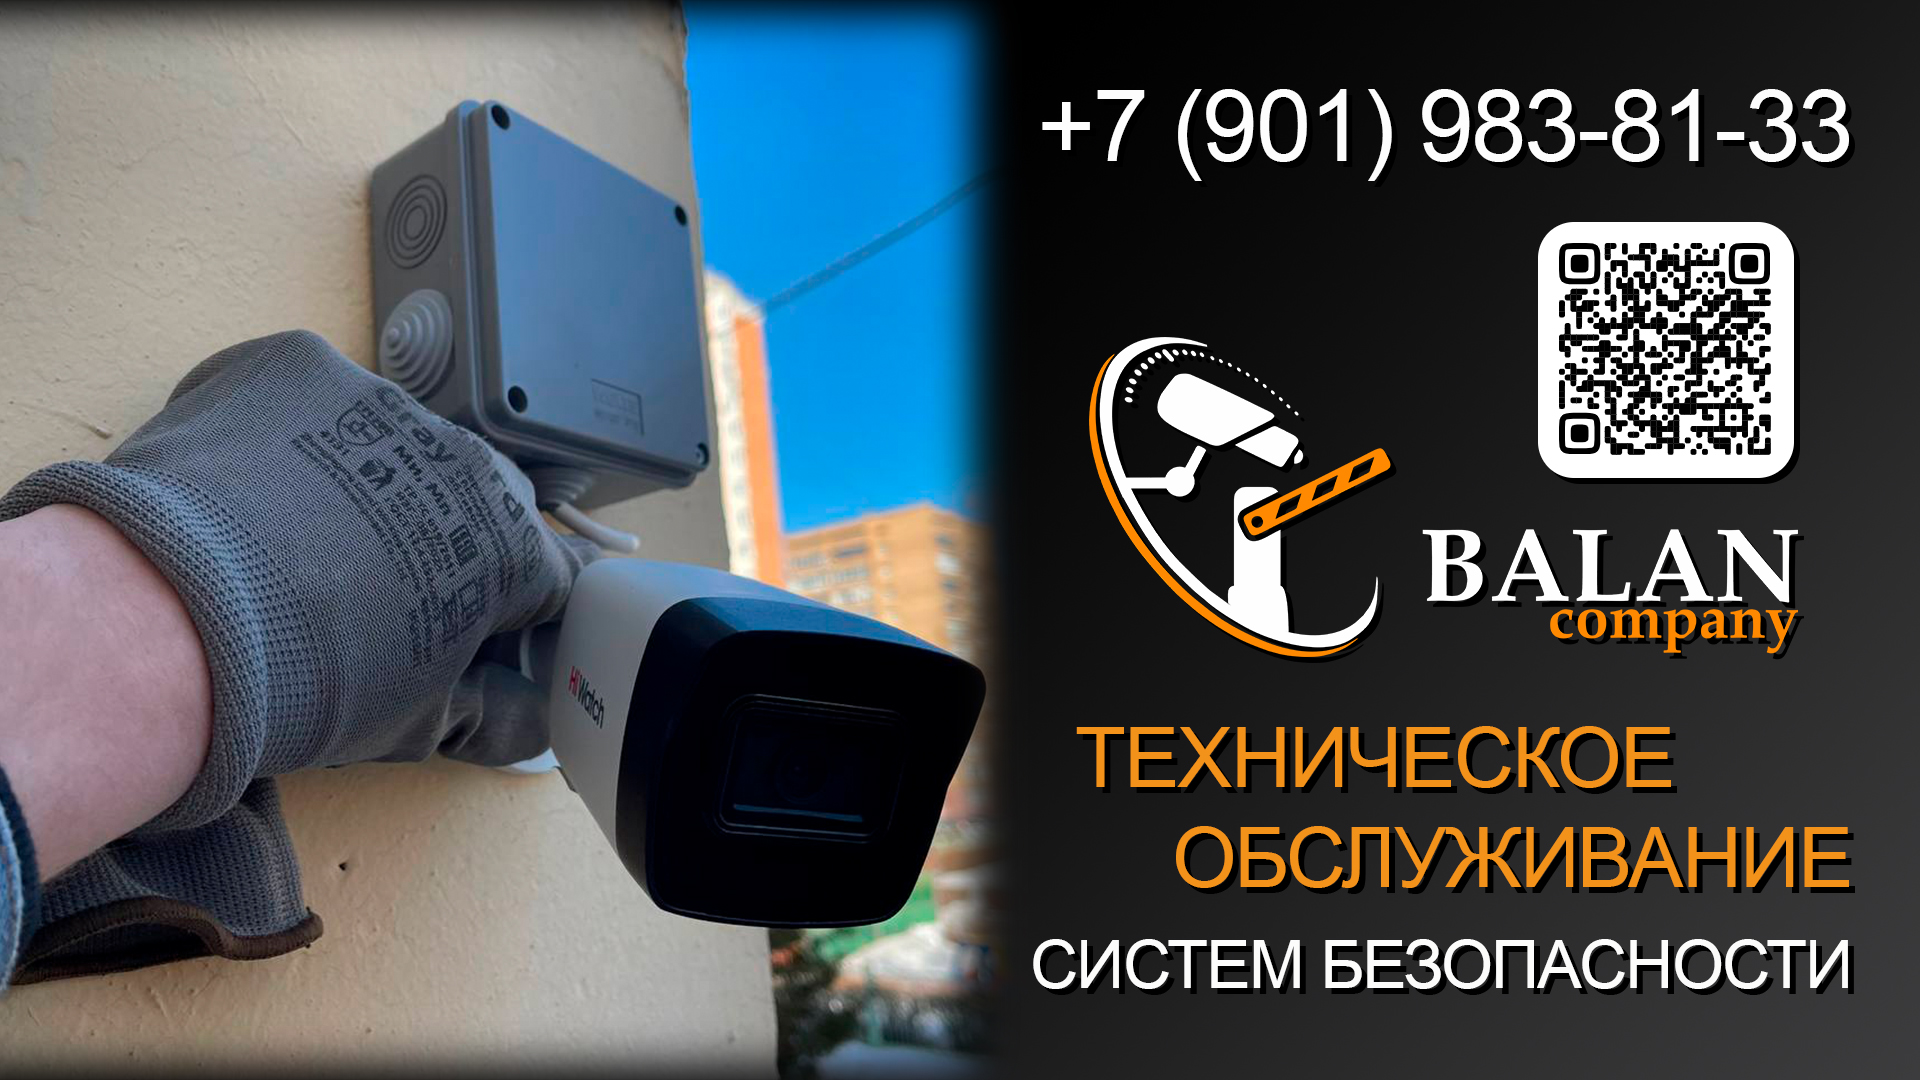 Обеспечение безопасности в школе: установка IP видеонаблюдения от BALAN company в Москве и МО